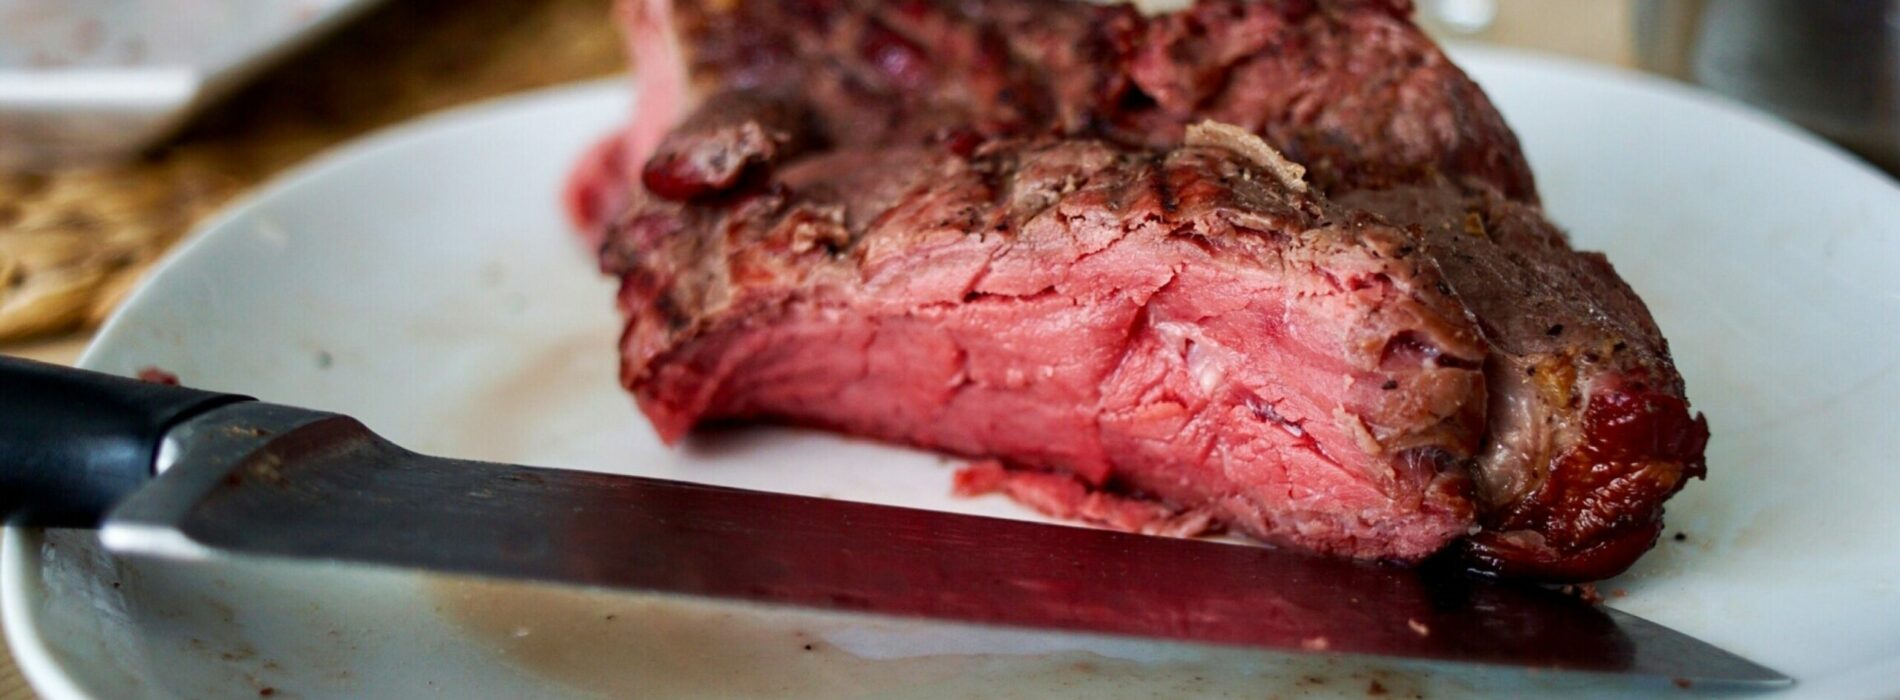 Czy czerwone mięso jest naprawdę niezdrowe? Jak dużo czerwonego mięsa powinniśmy jeść?